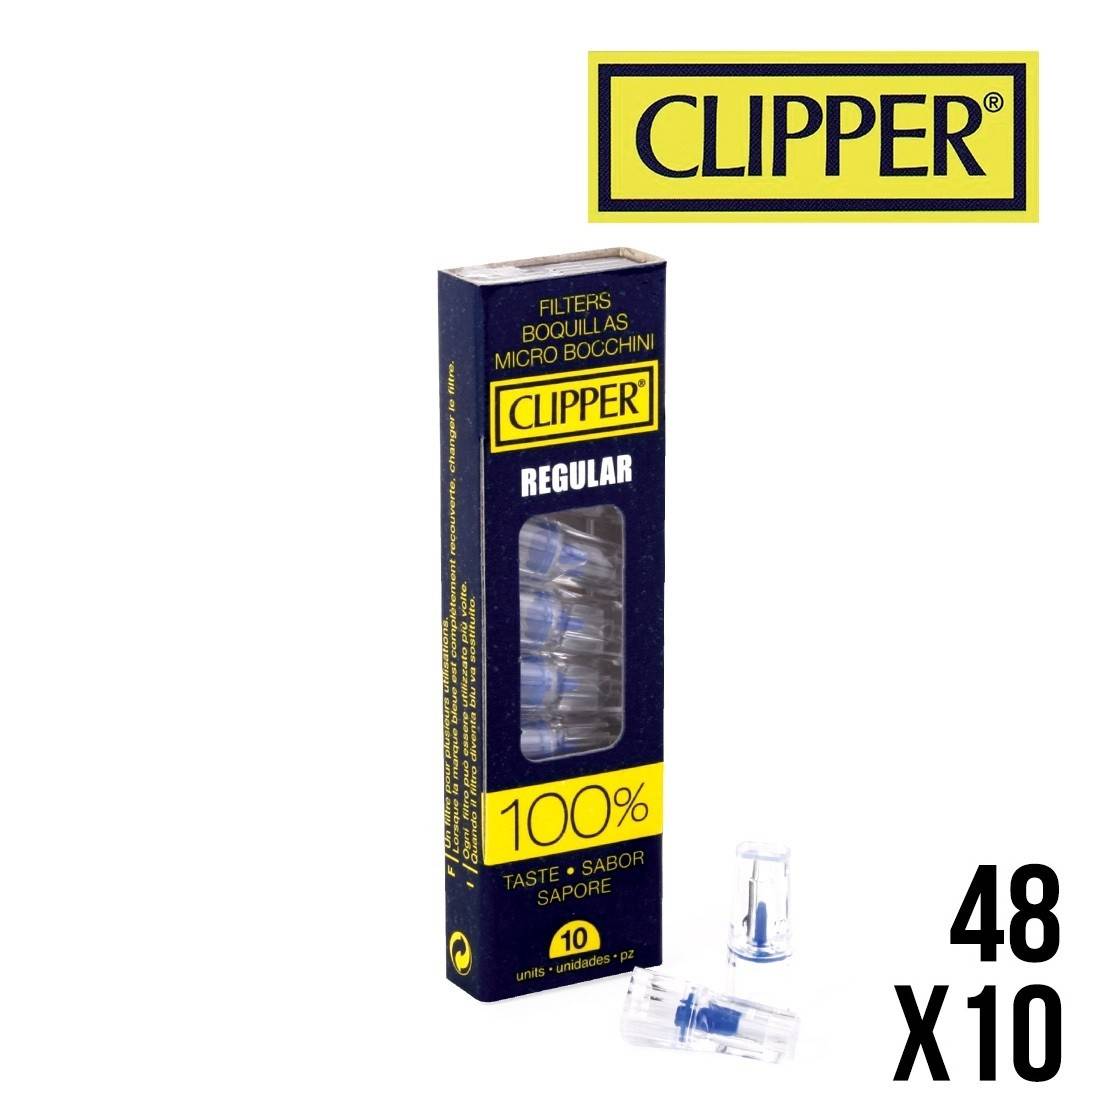 Filtre cigarette anti-nicotine et anti-goudron Clipper